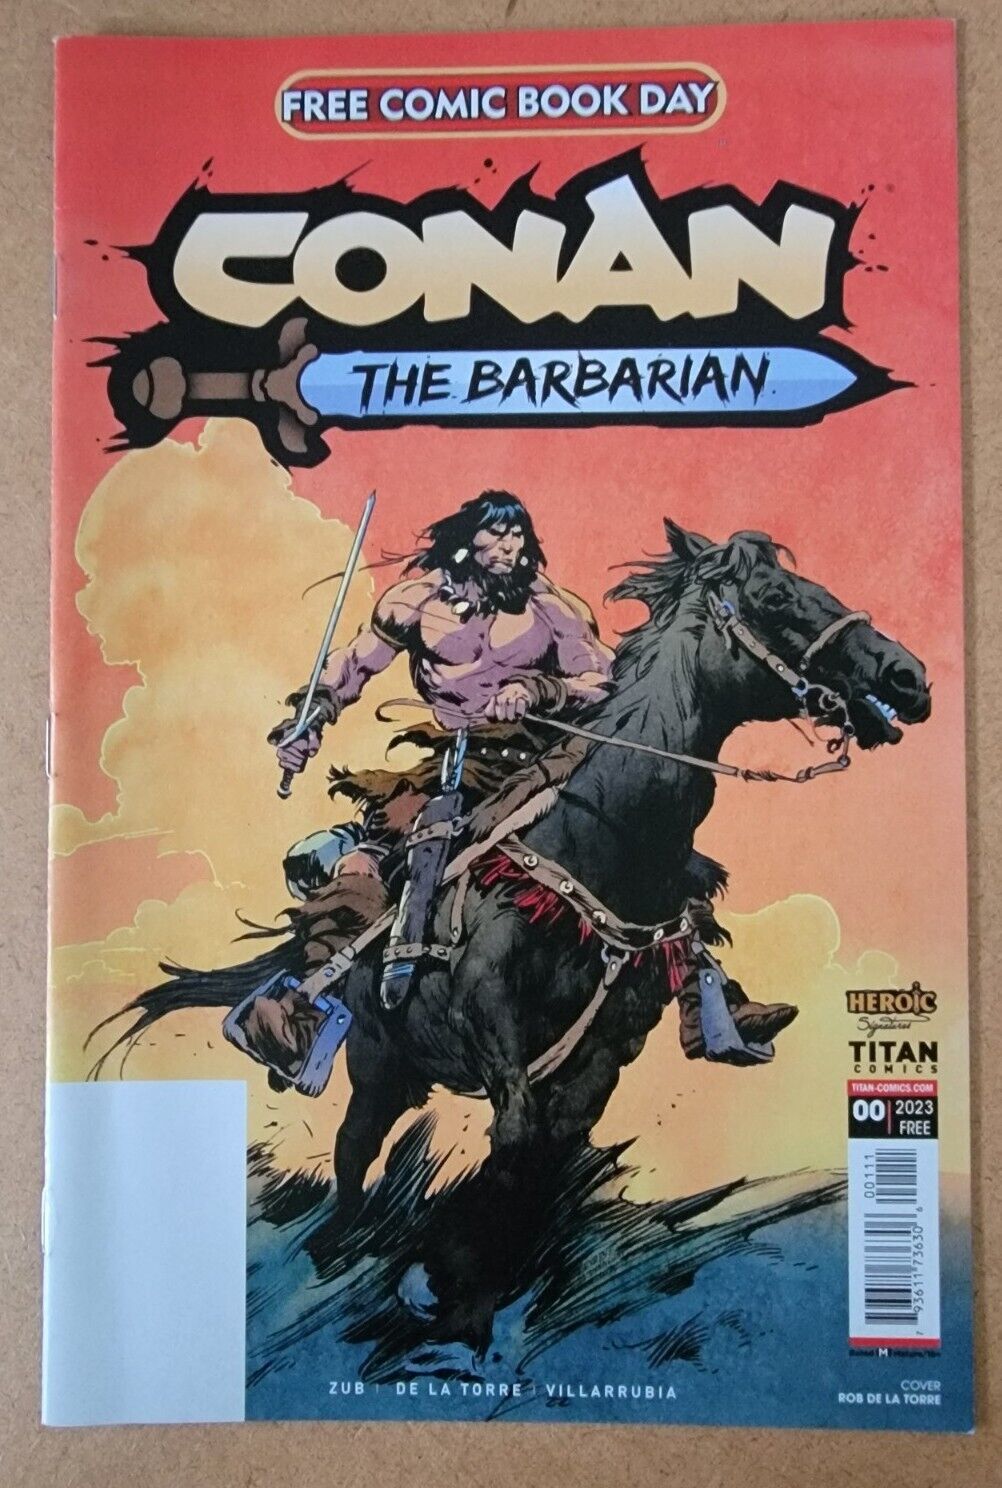 Conan the Barbarian FCBD 2023 Special 1 Jim Zub Free Comic Book Day FCBD New NM